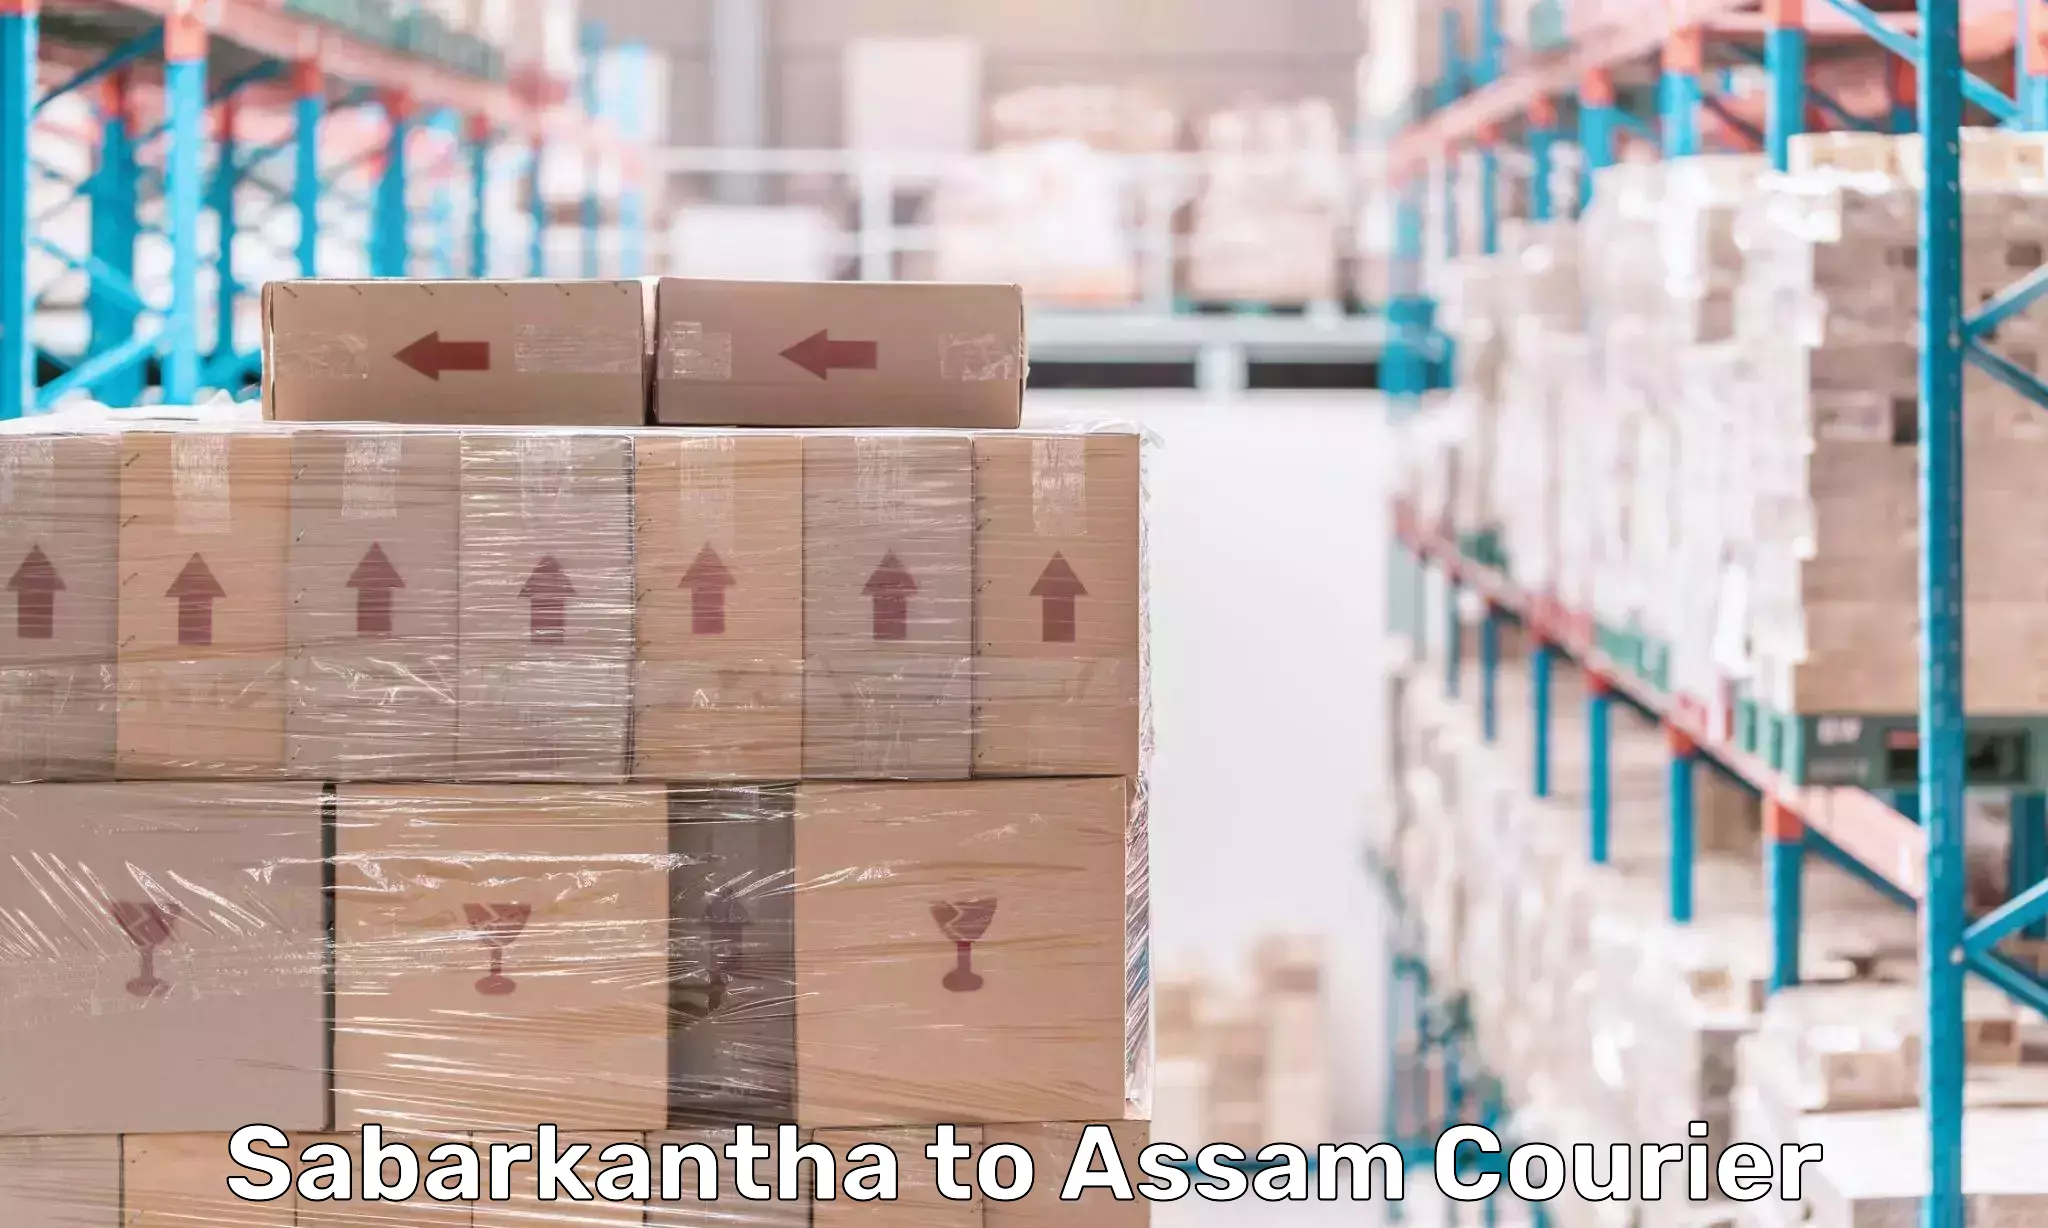 Advanced courier platforms Sabarkantha to Assam